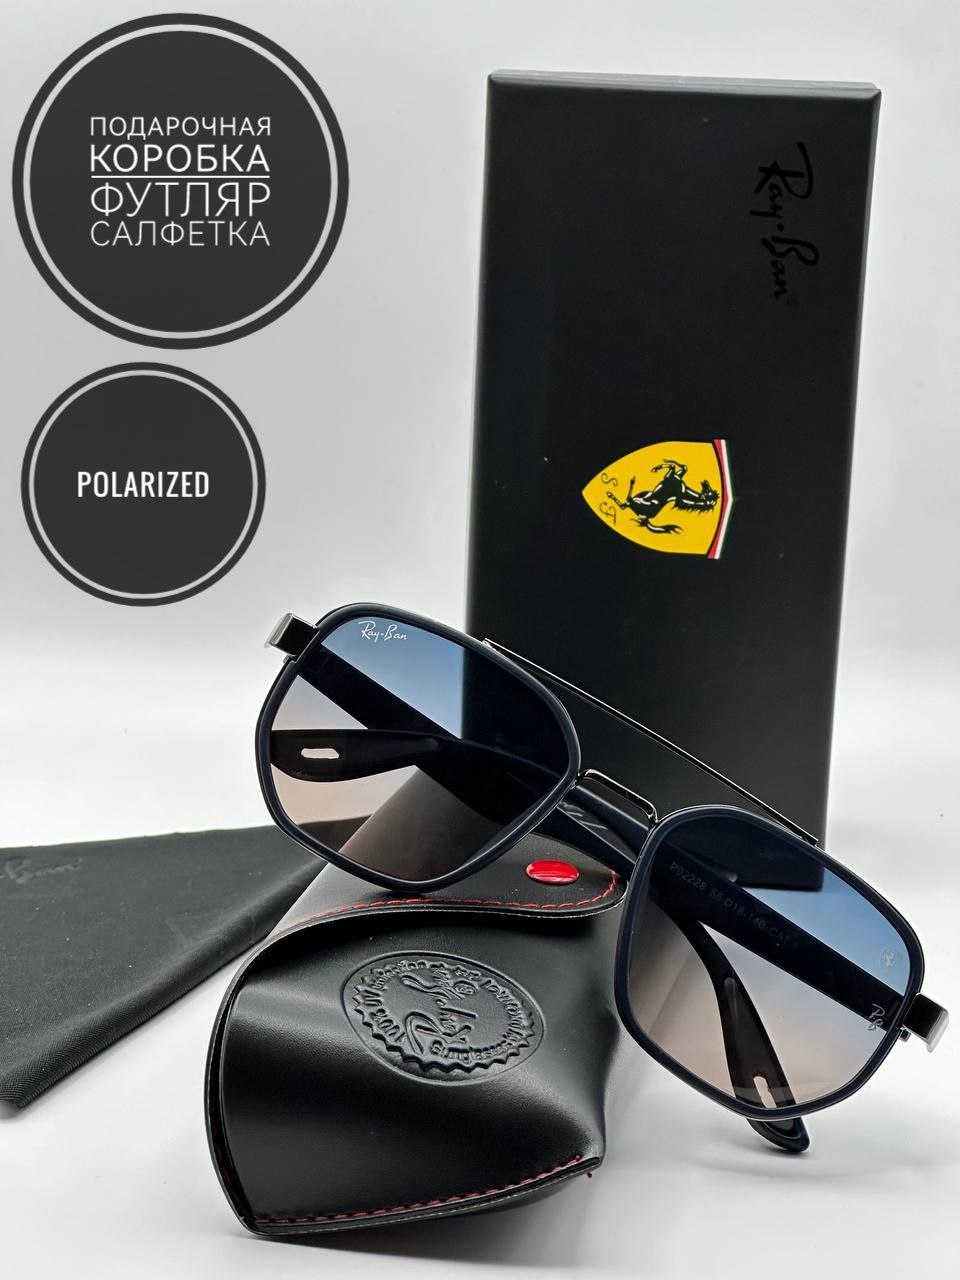 Солнцезащитные очки мужские Ray-Ban Феррари-2 сине-коричневые/оправа матовая - купить в Москве, цены на Мегамаркет | 600017370368